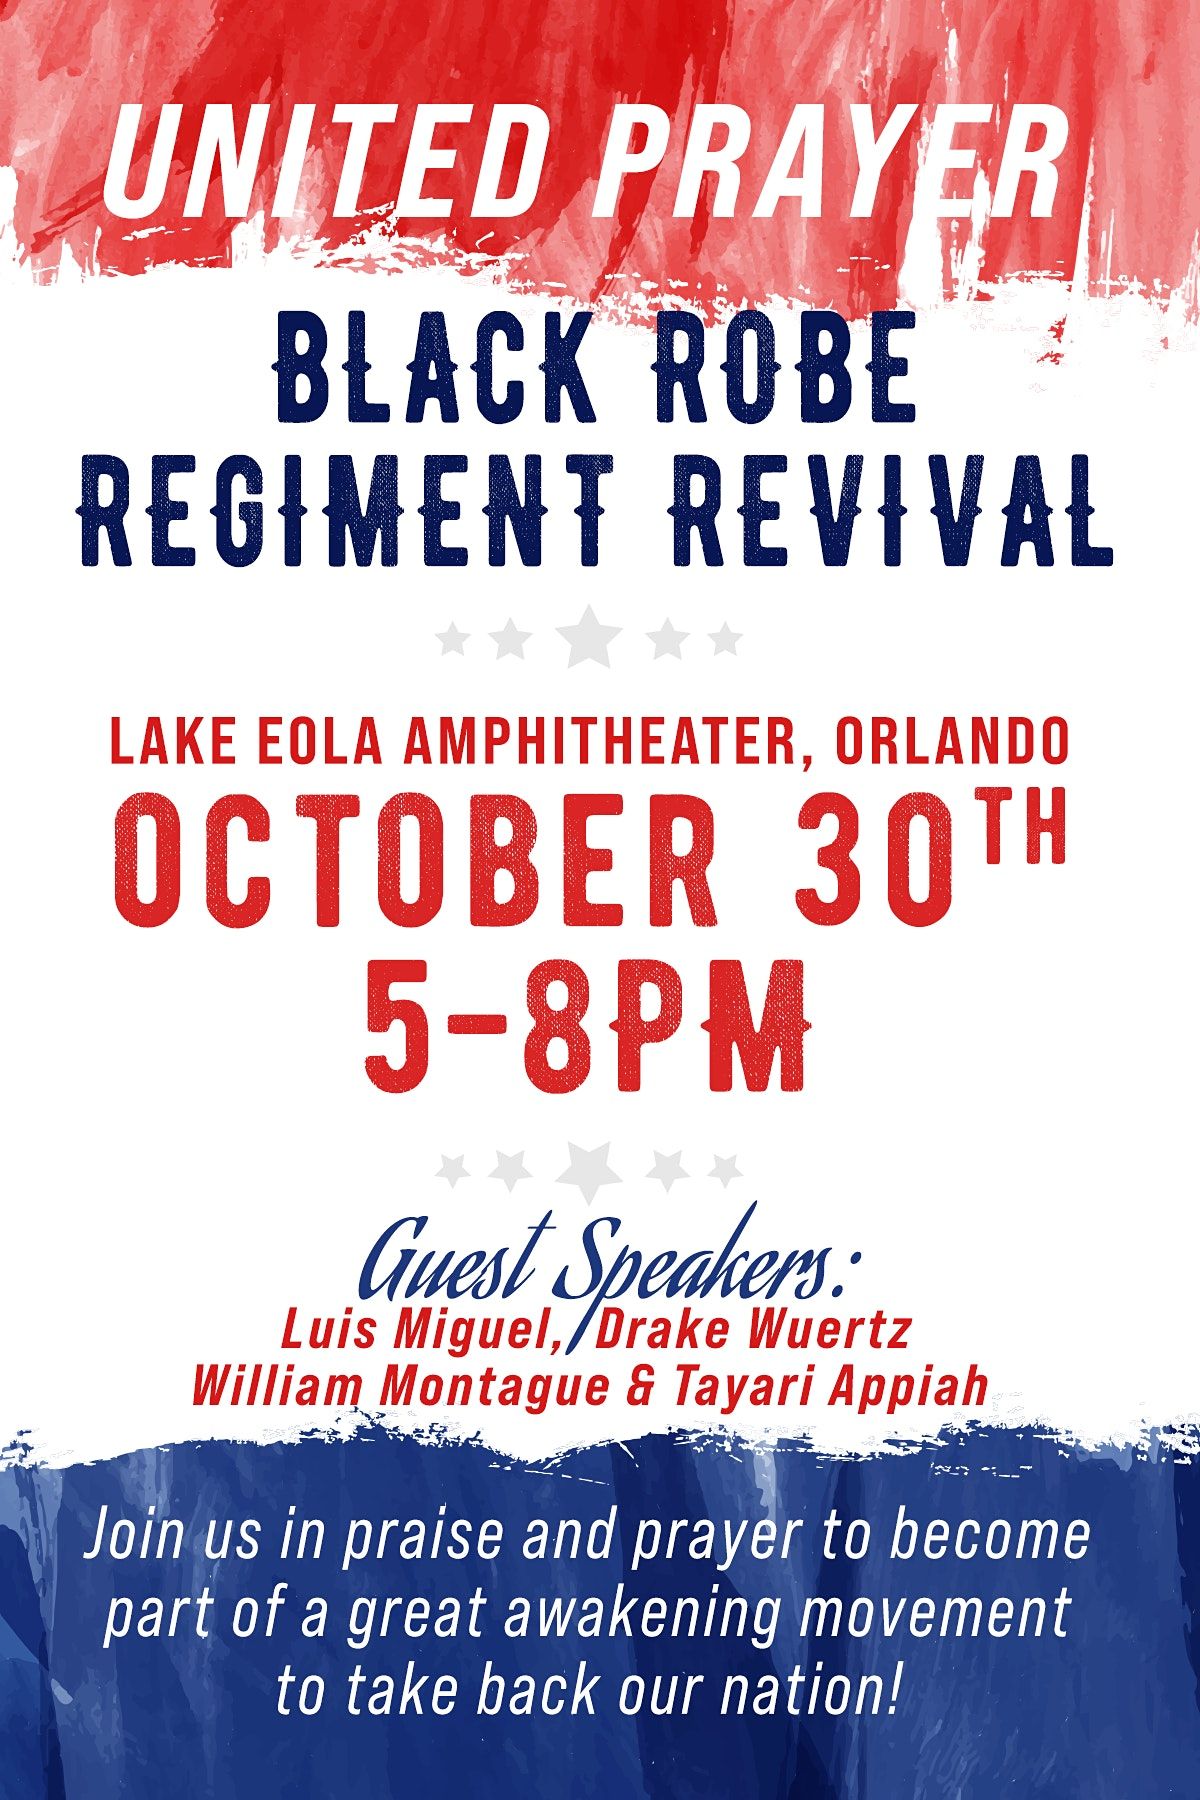 United Prayer: Black Robe Regiment Revival